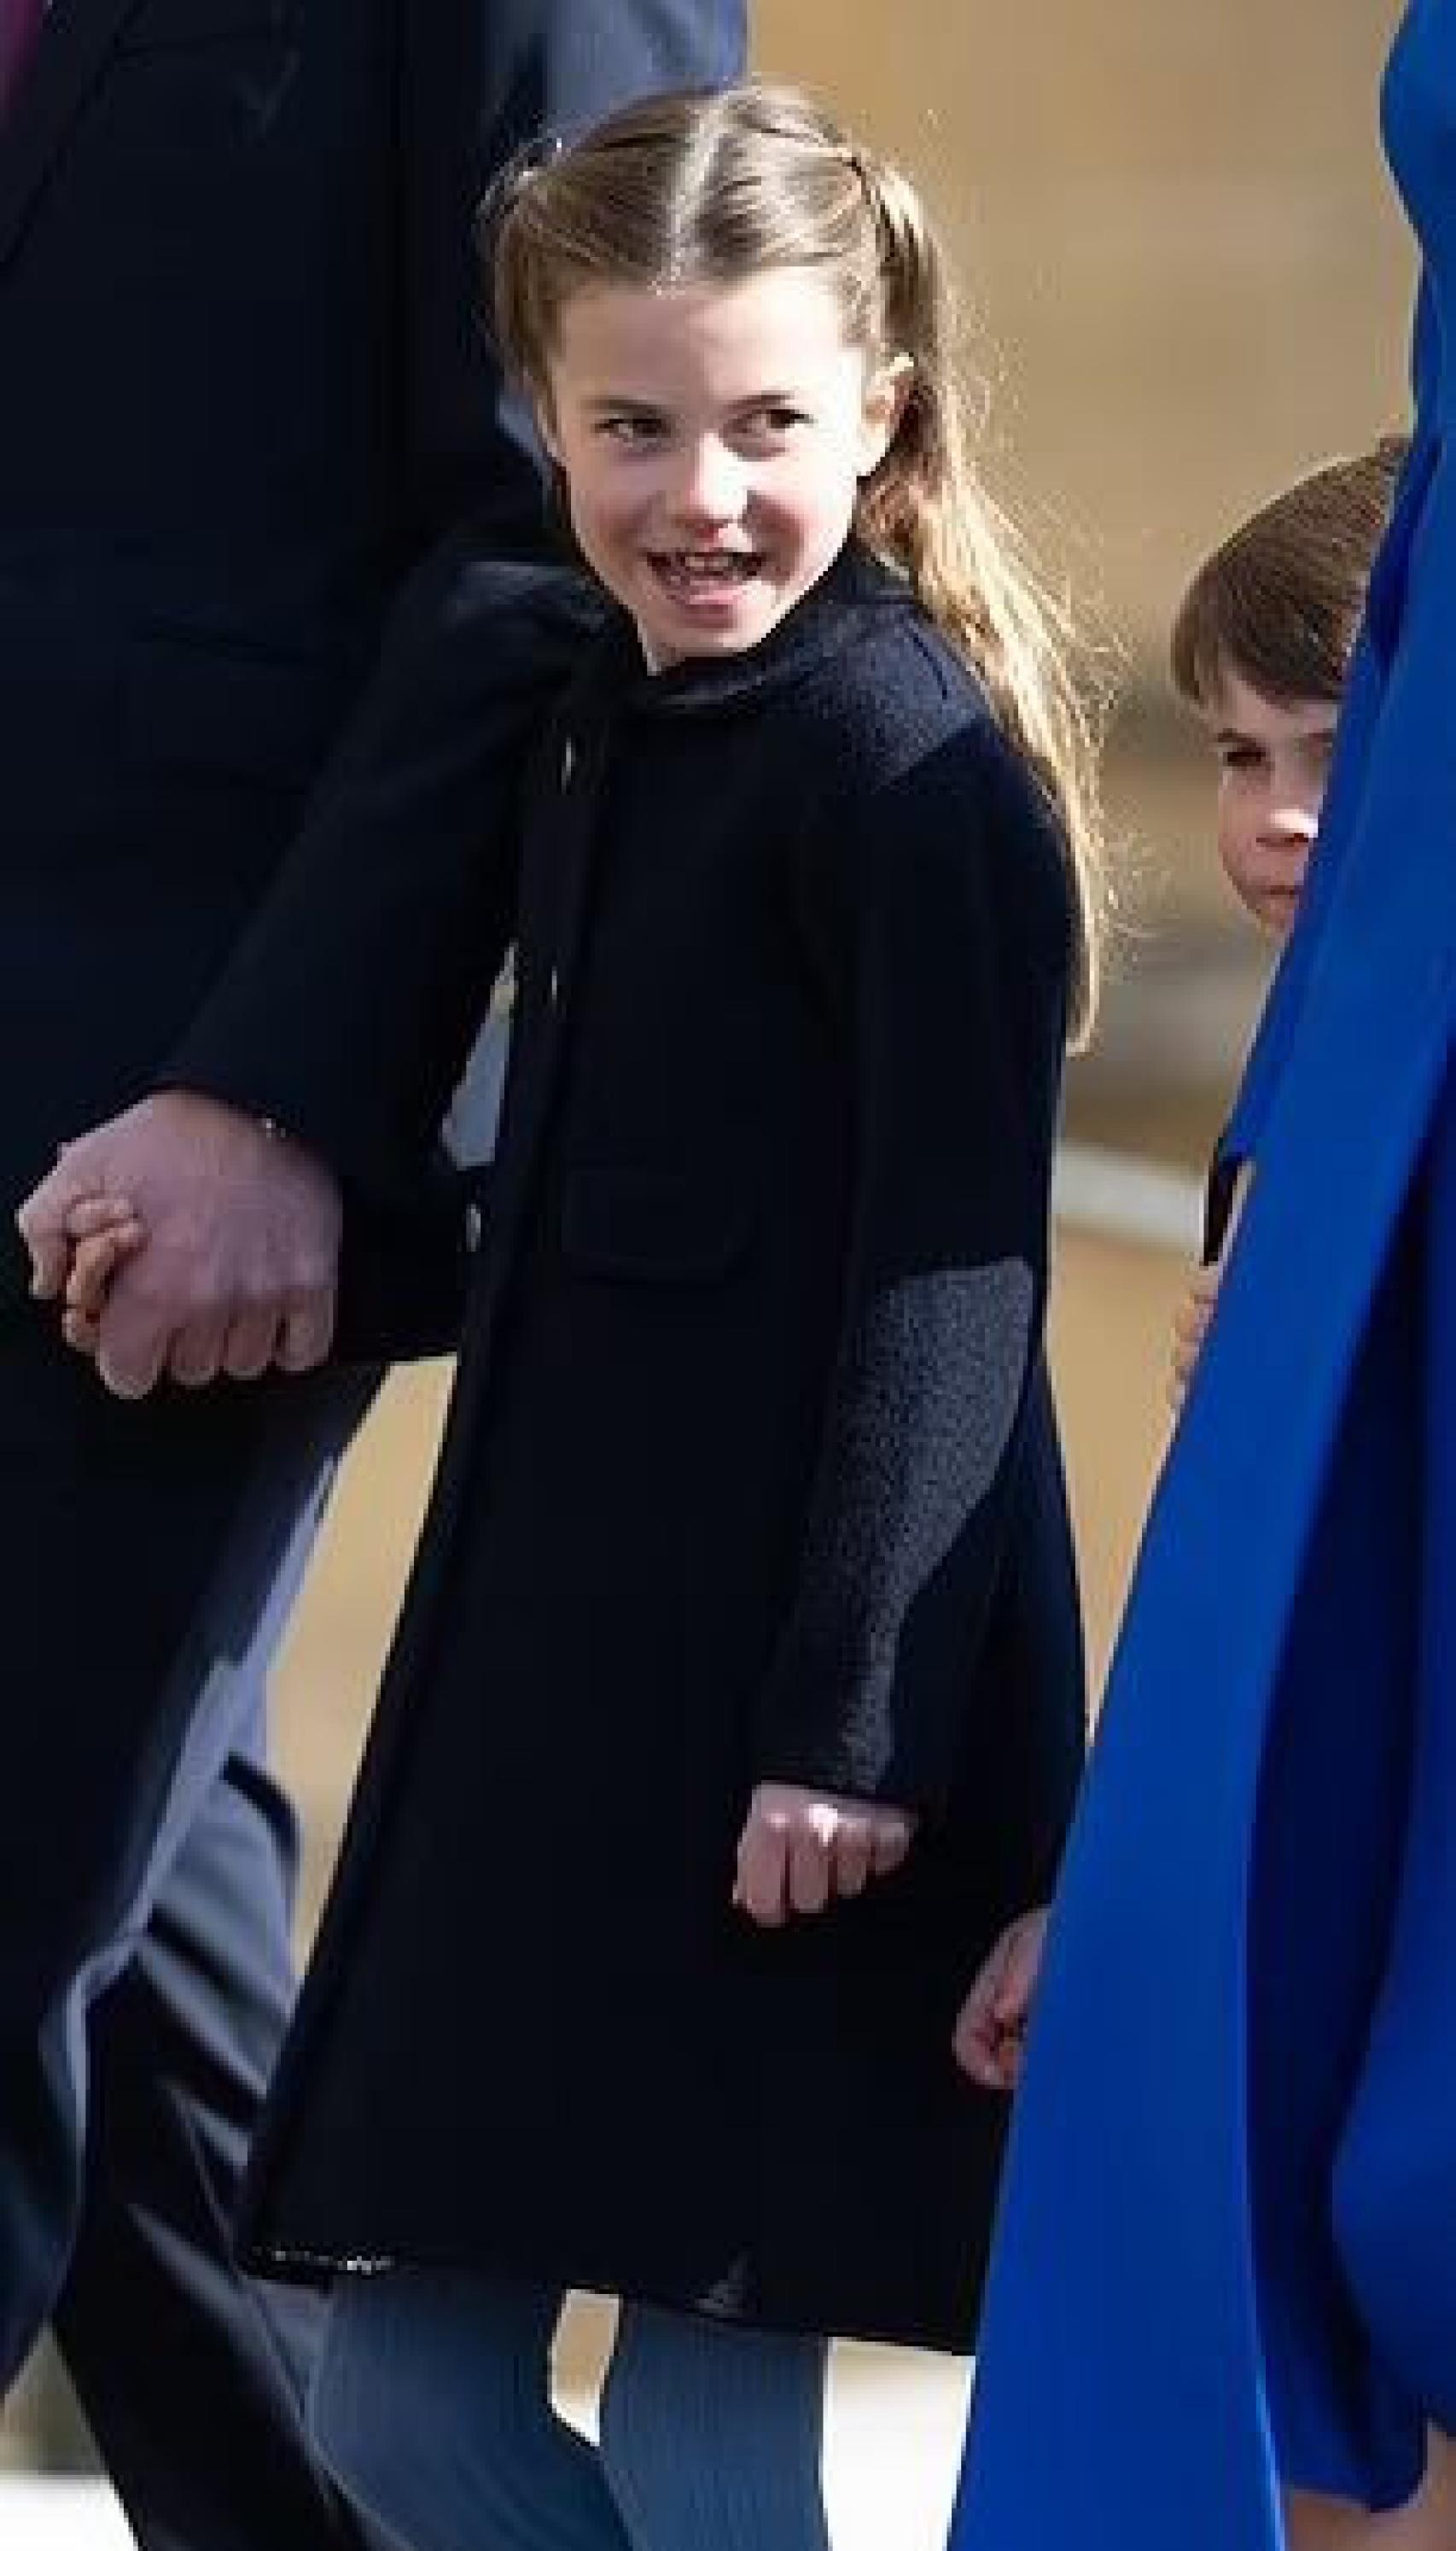 La princesa Charlotte caminando con el abrigo de Marae Kids